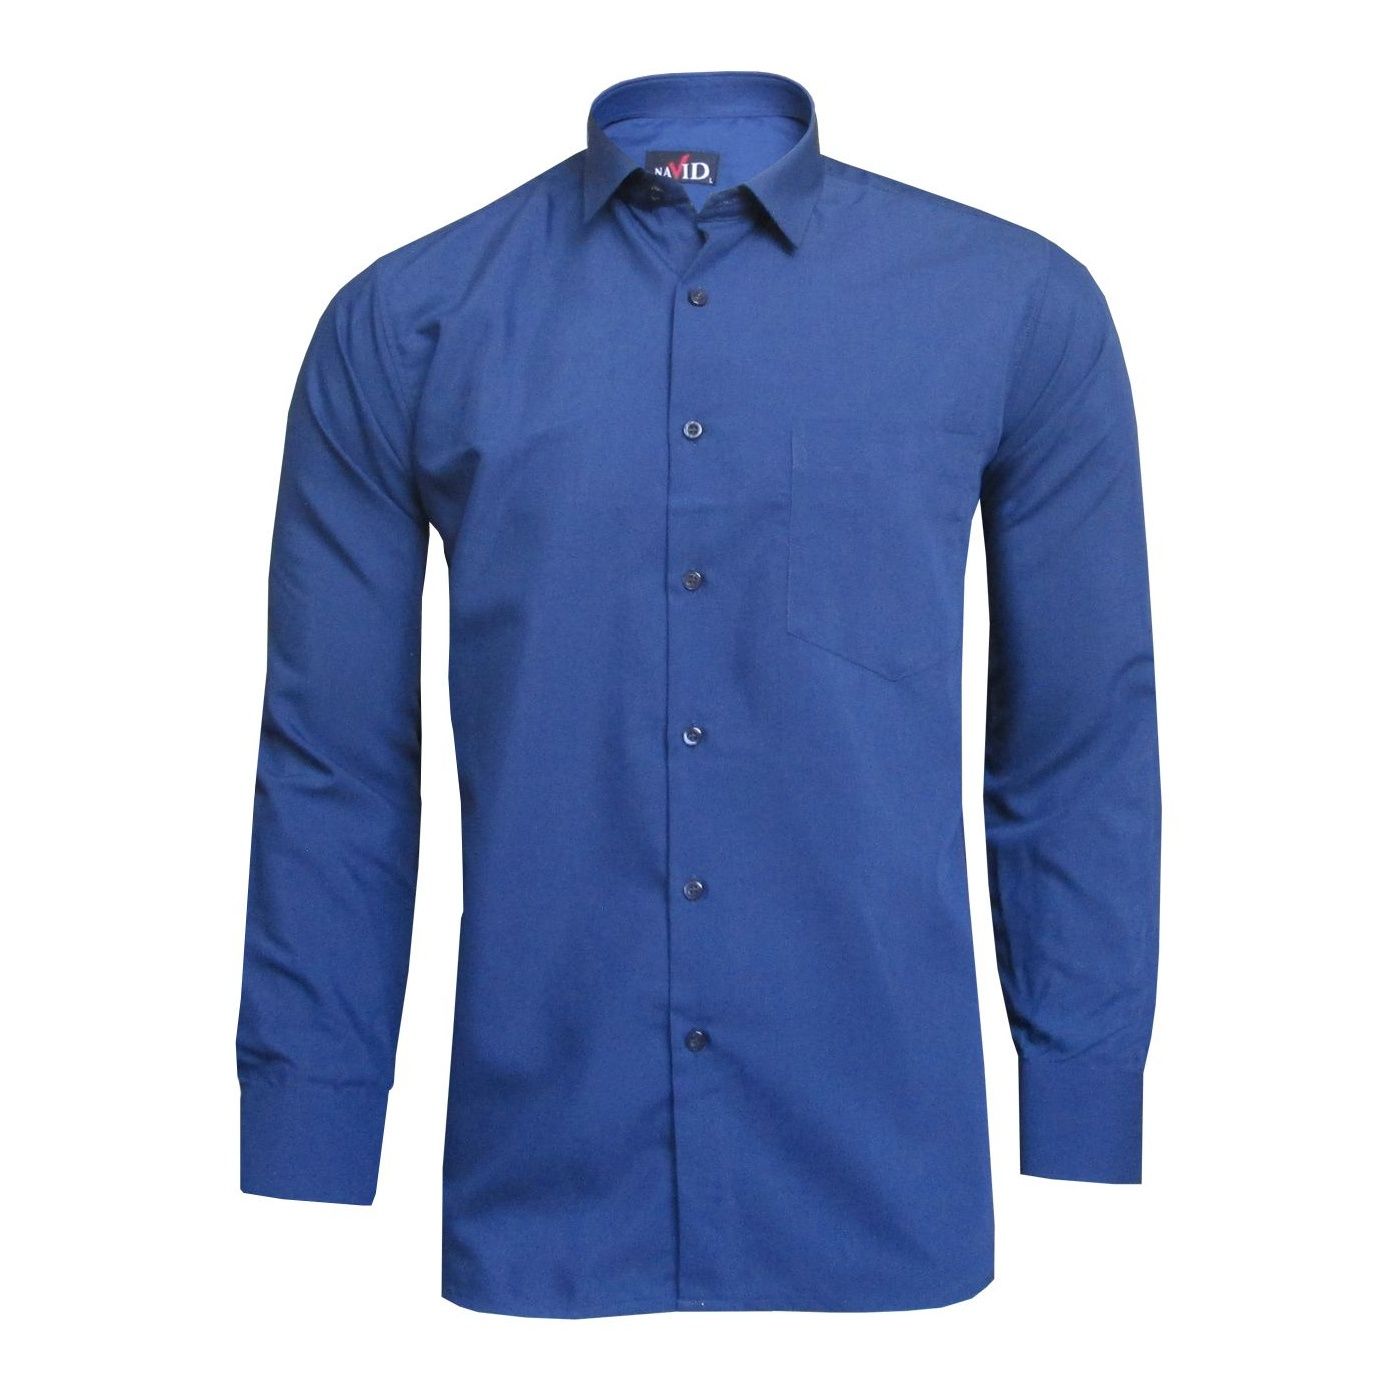 پیراهن مردانه نوید مدل TET-DAK کد 20304 رنگ آبی